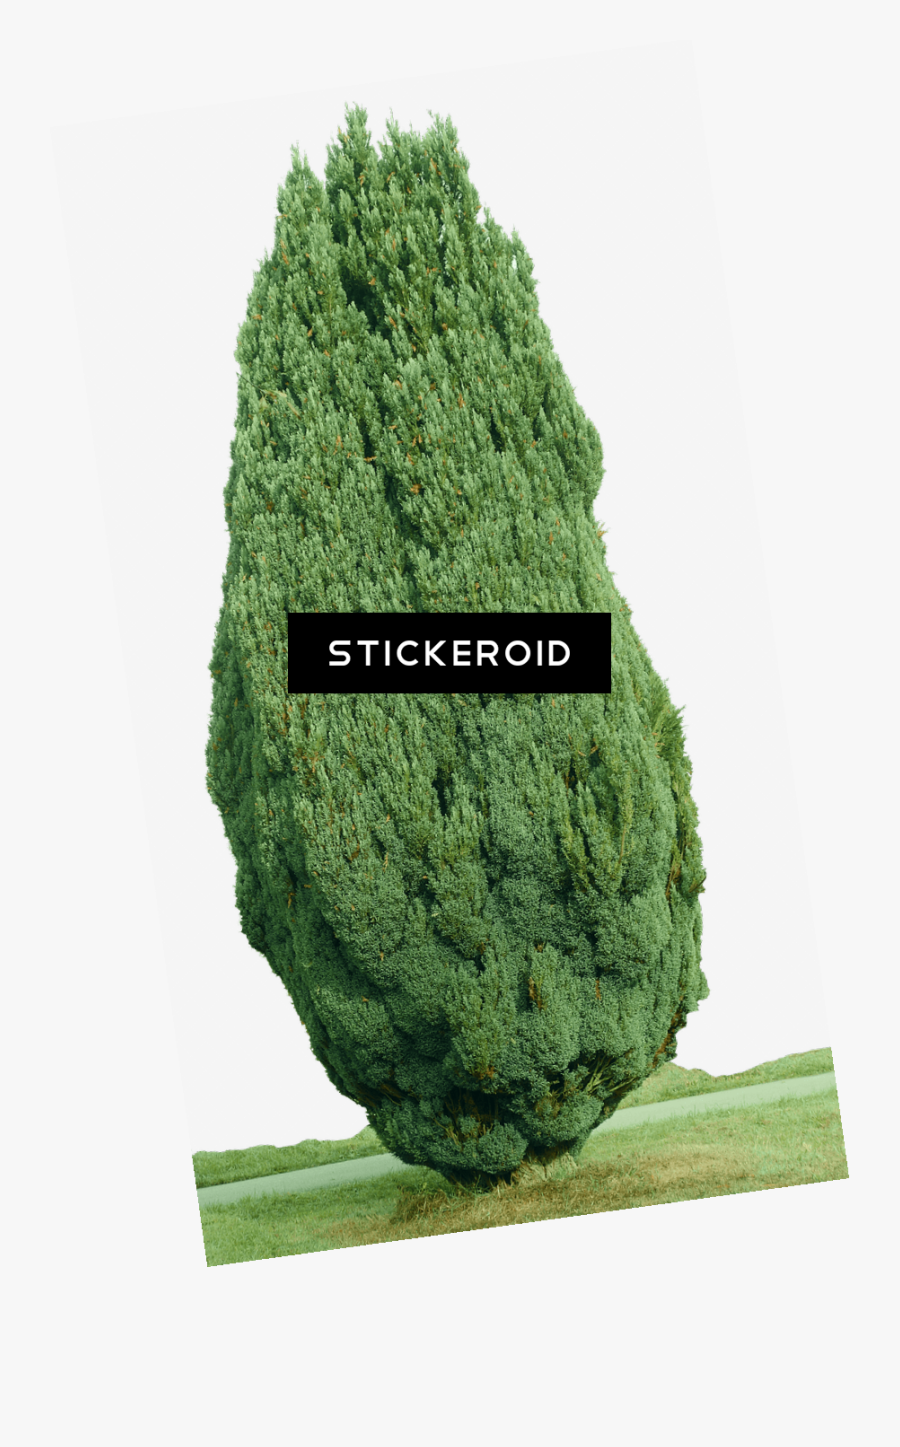 Cypress Tree Png - Imagenes De Arboles De Cipres, Transparent Clipart